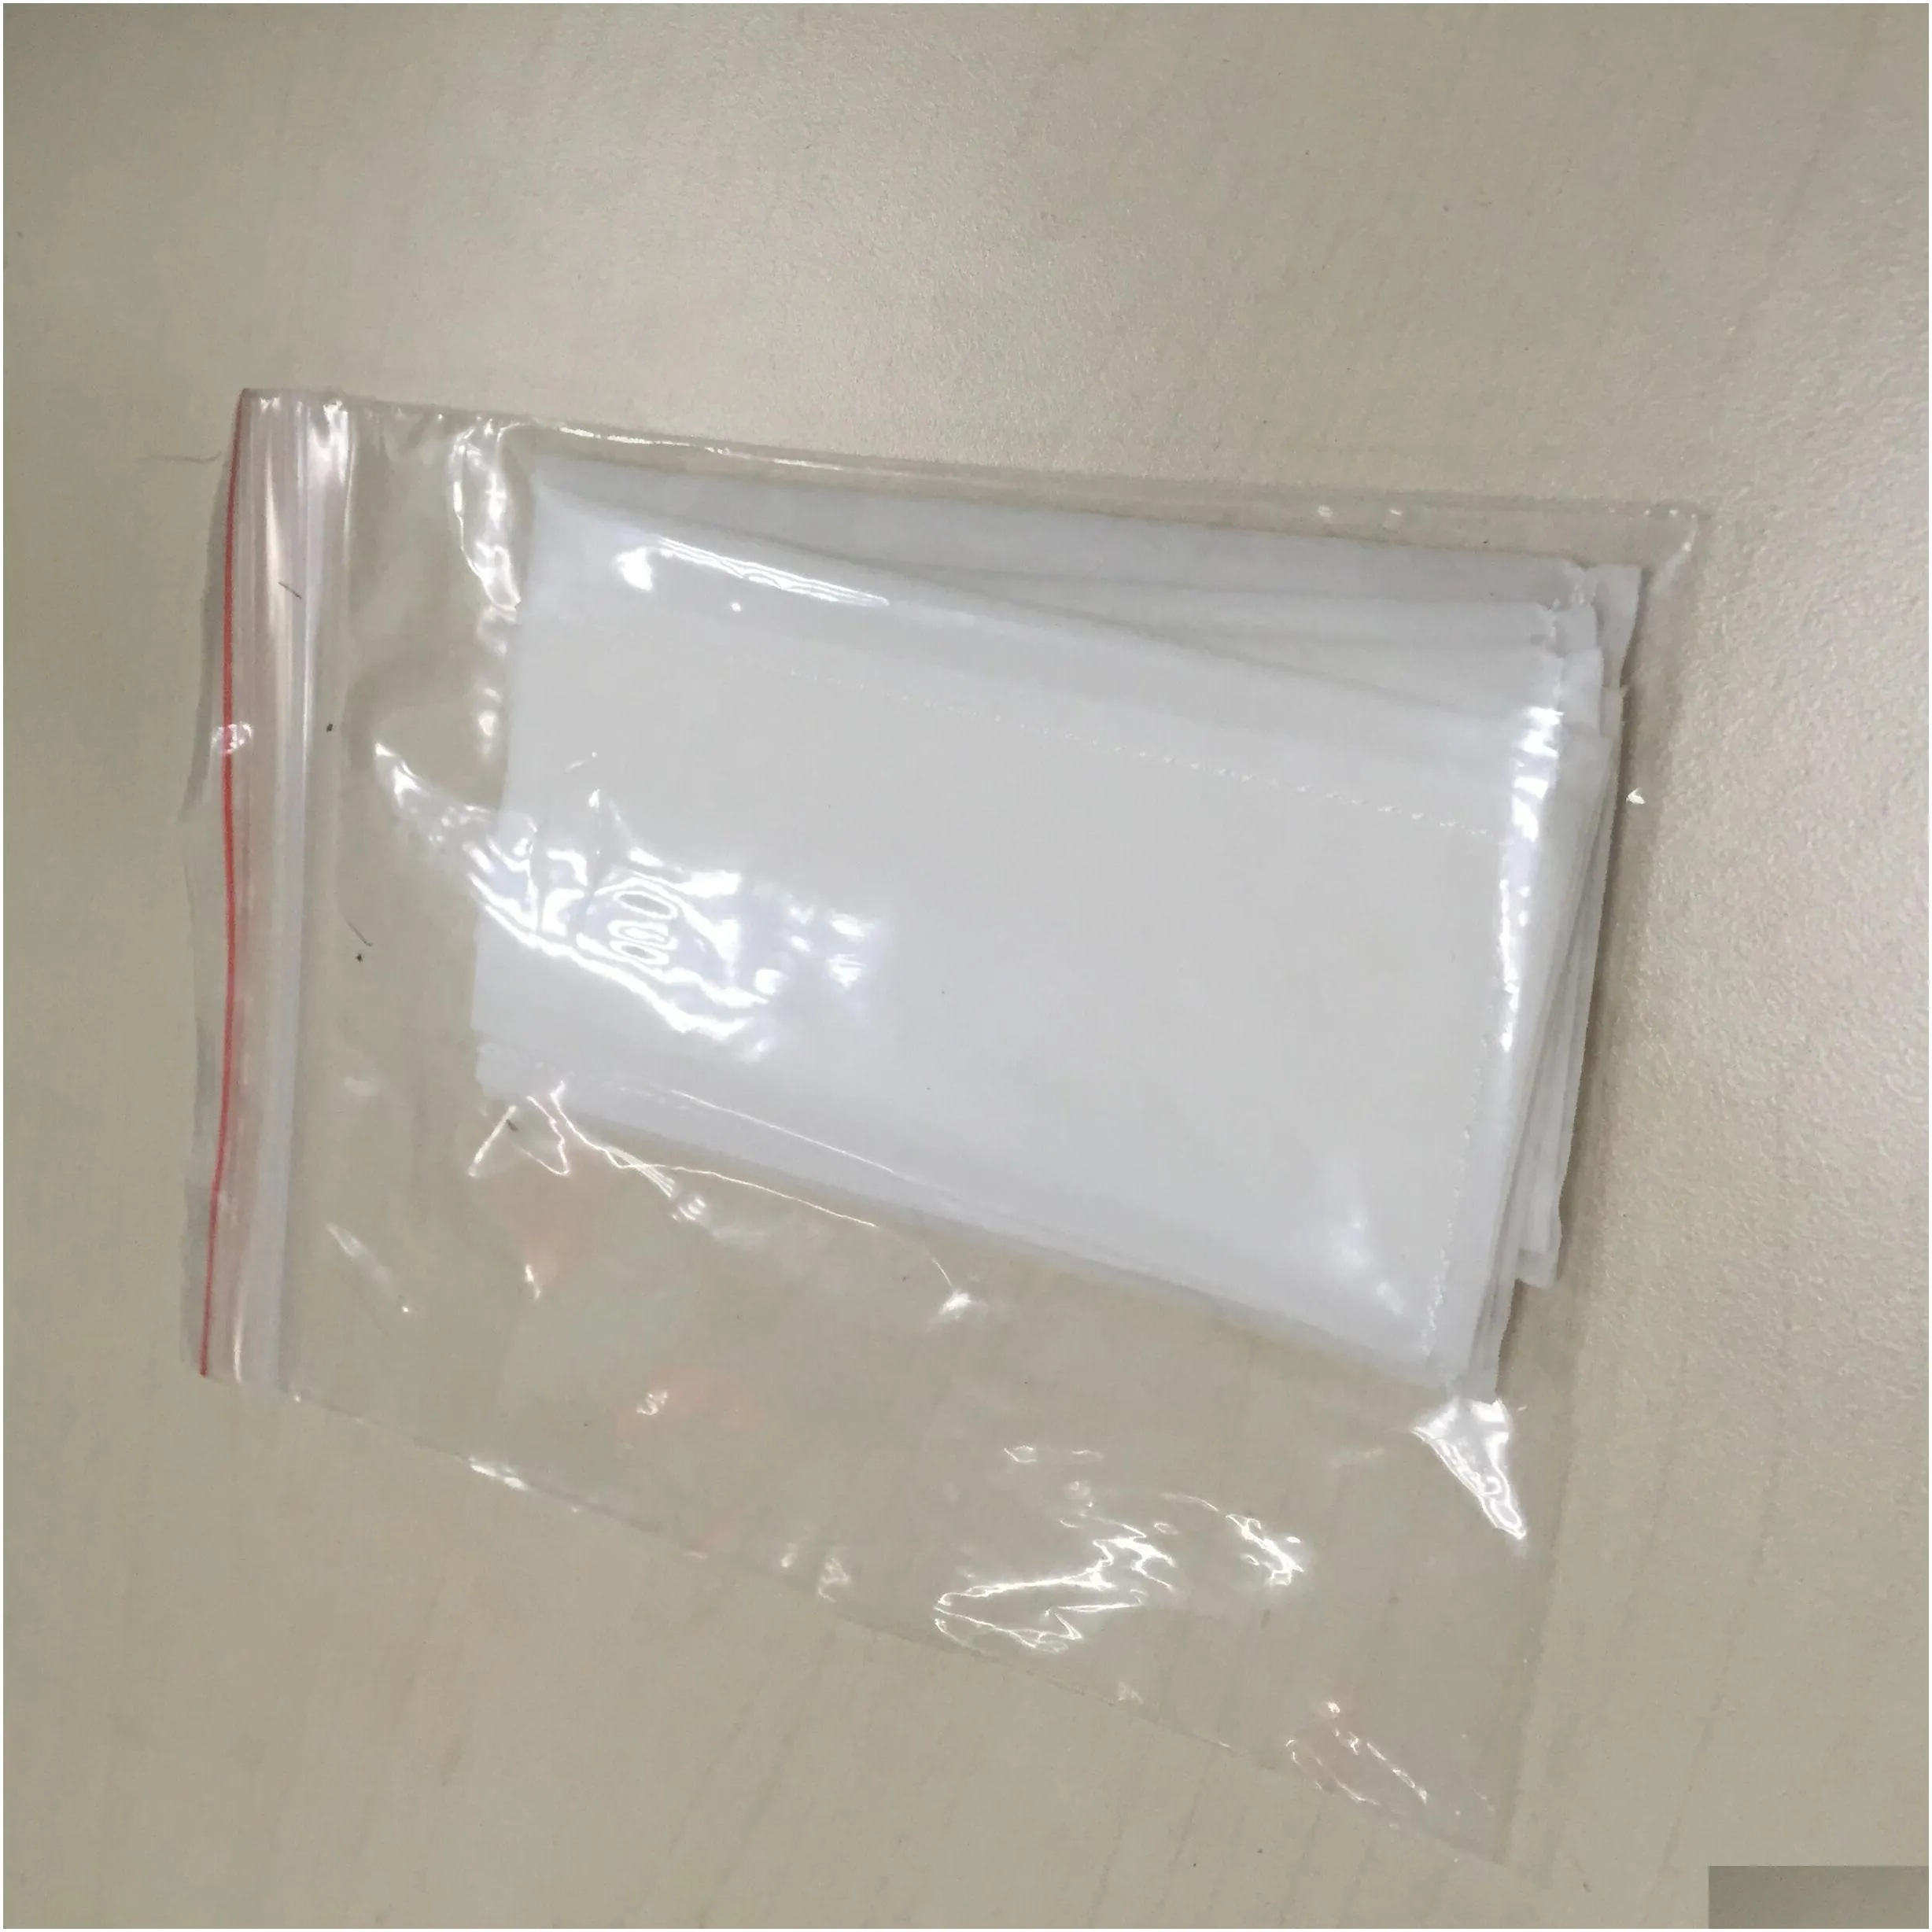 3 x 6 inch 25 micron rosin press bags 25 micron rosin bags